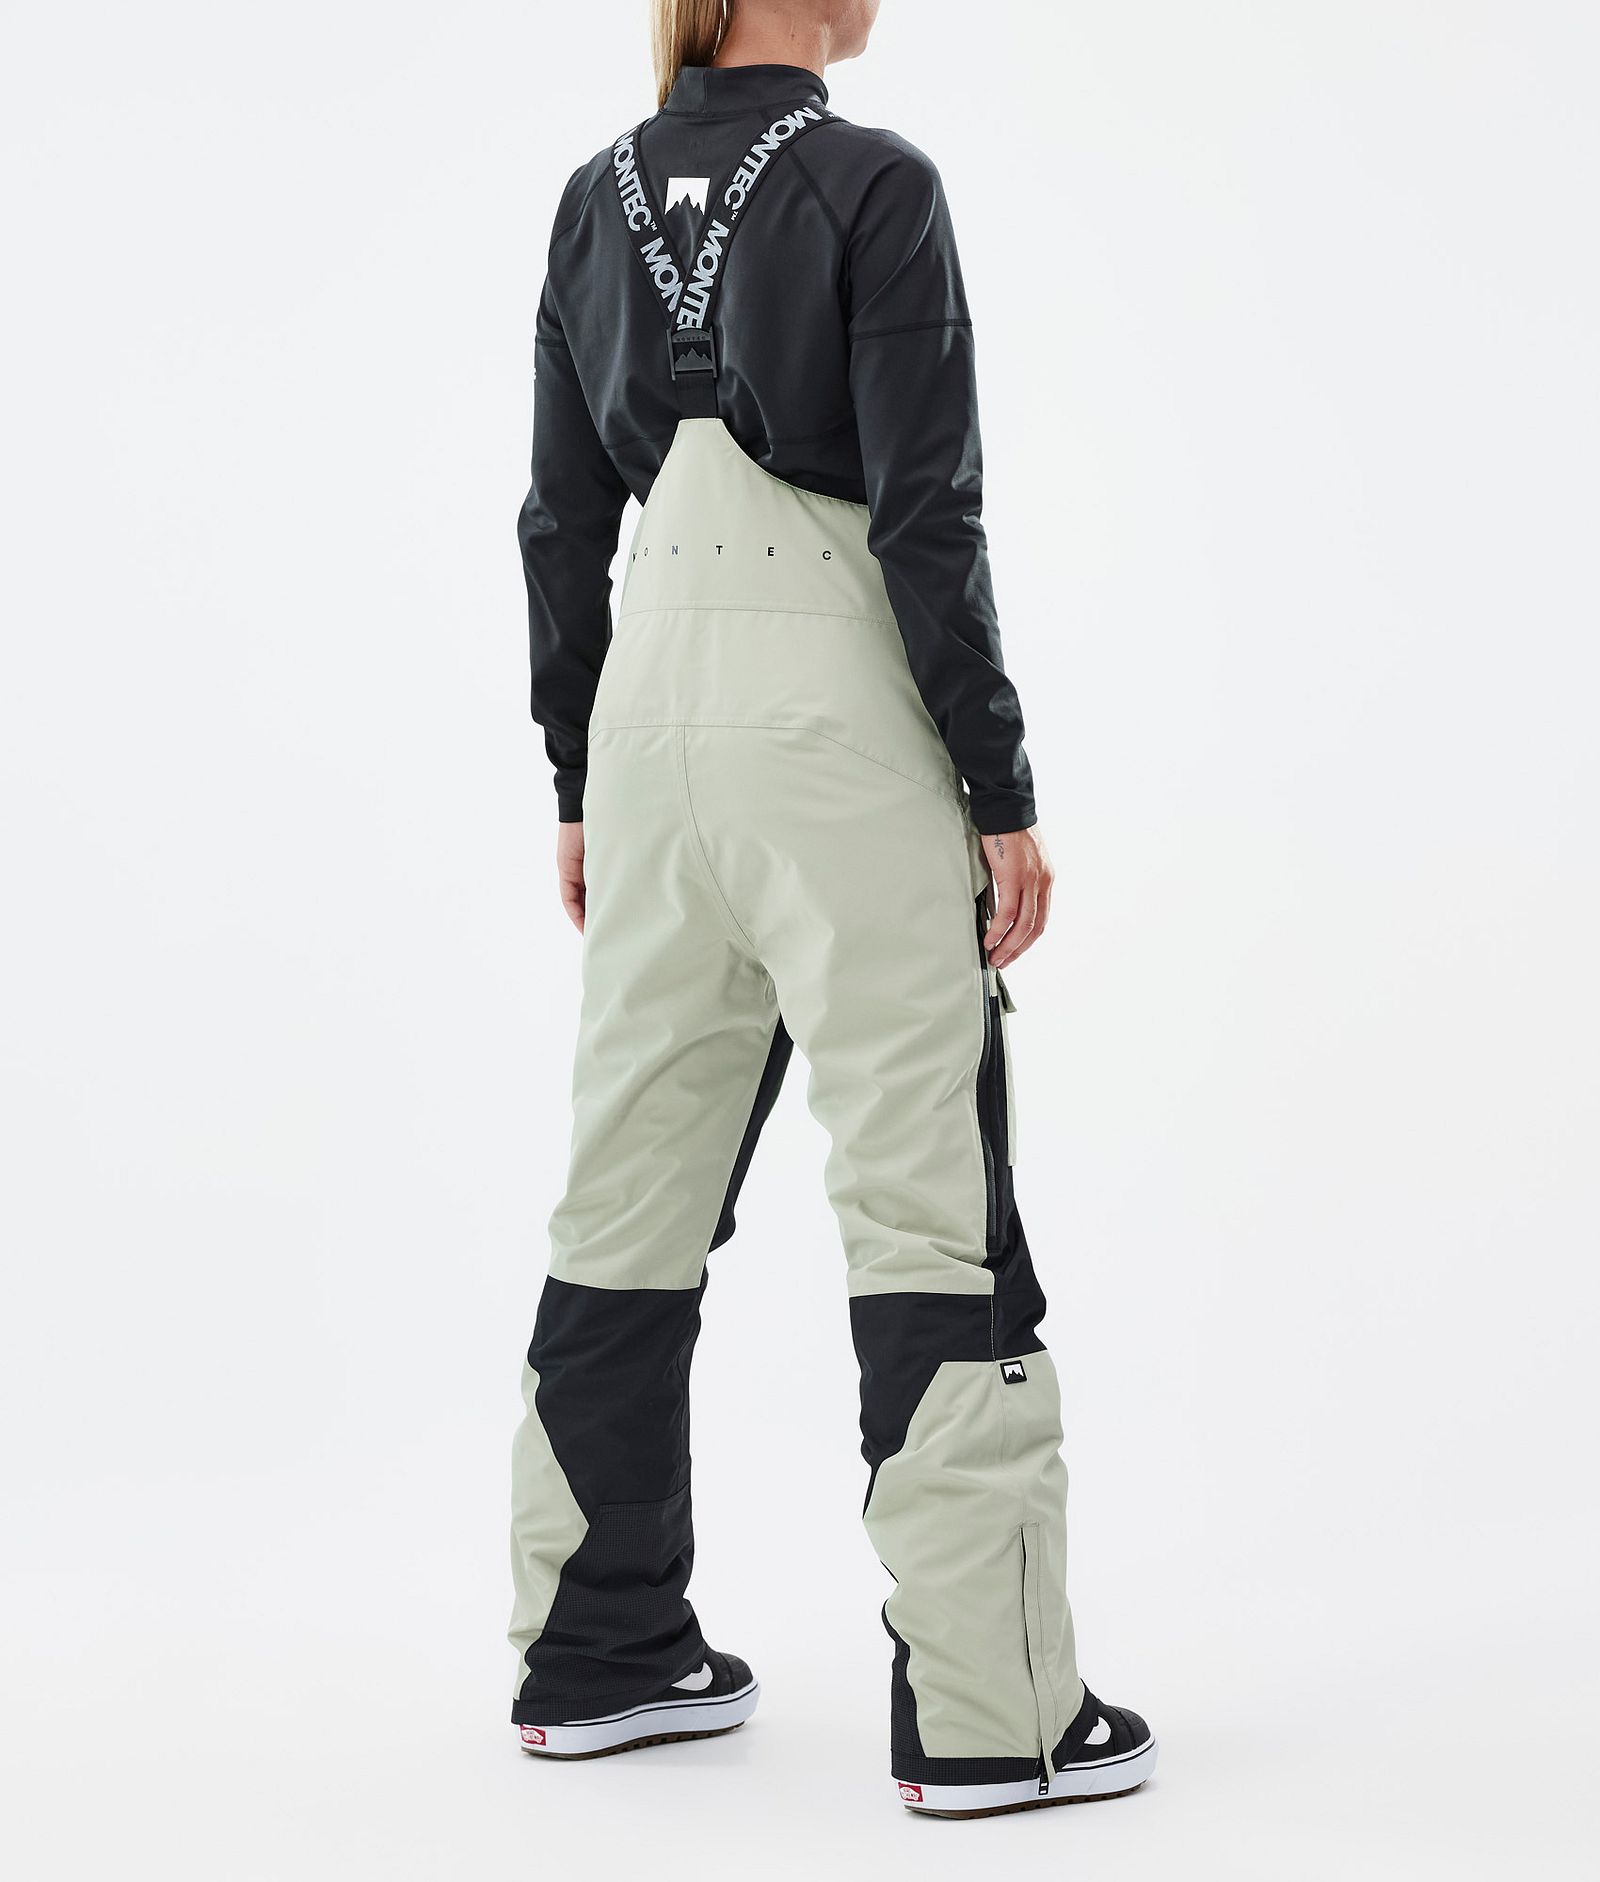 Fawk W Pantalones Snowboard Mujer Soft Green/Black Renewed, Imagen 4 de 7